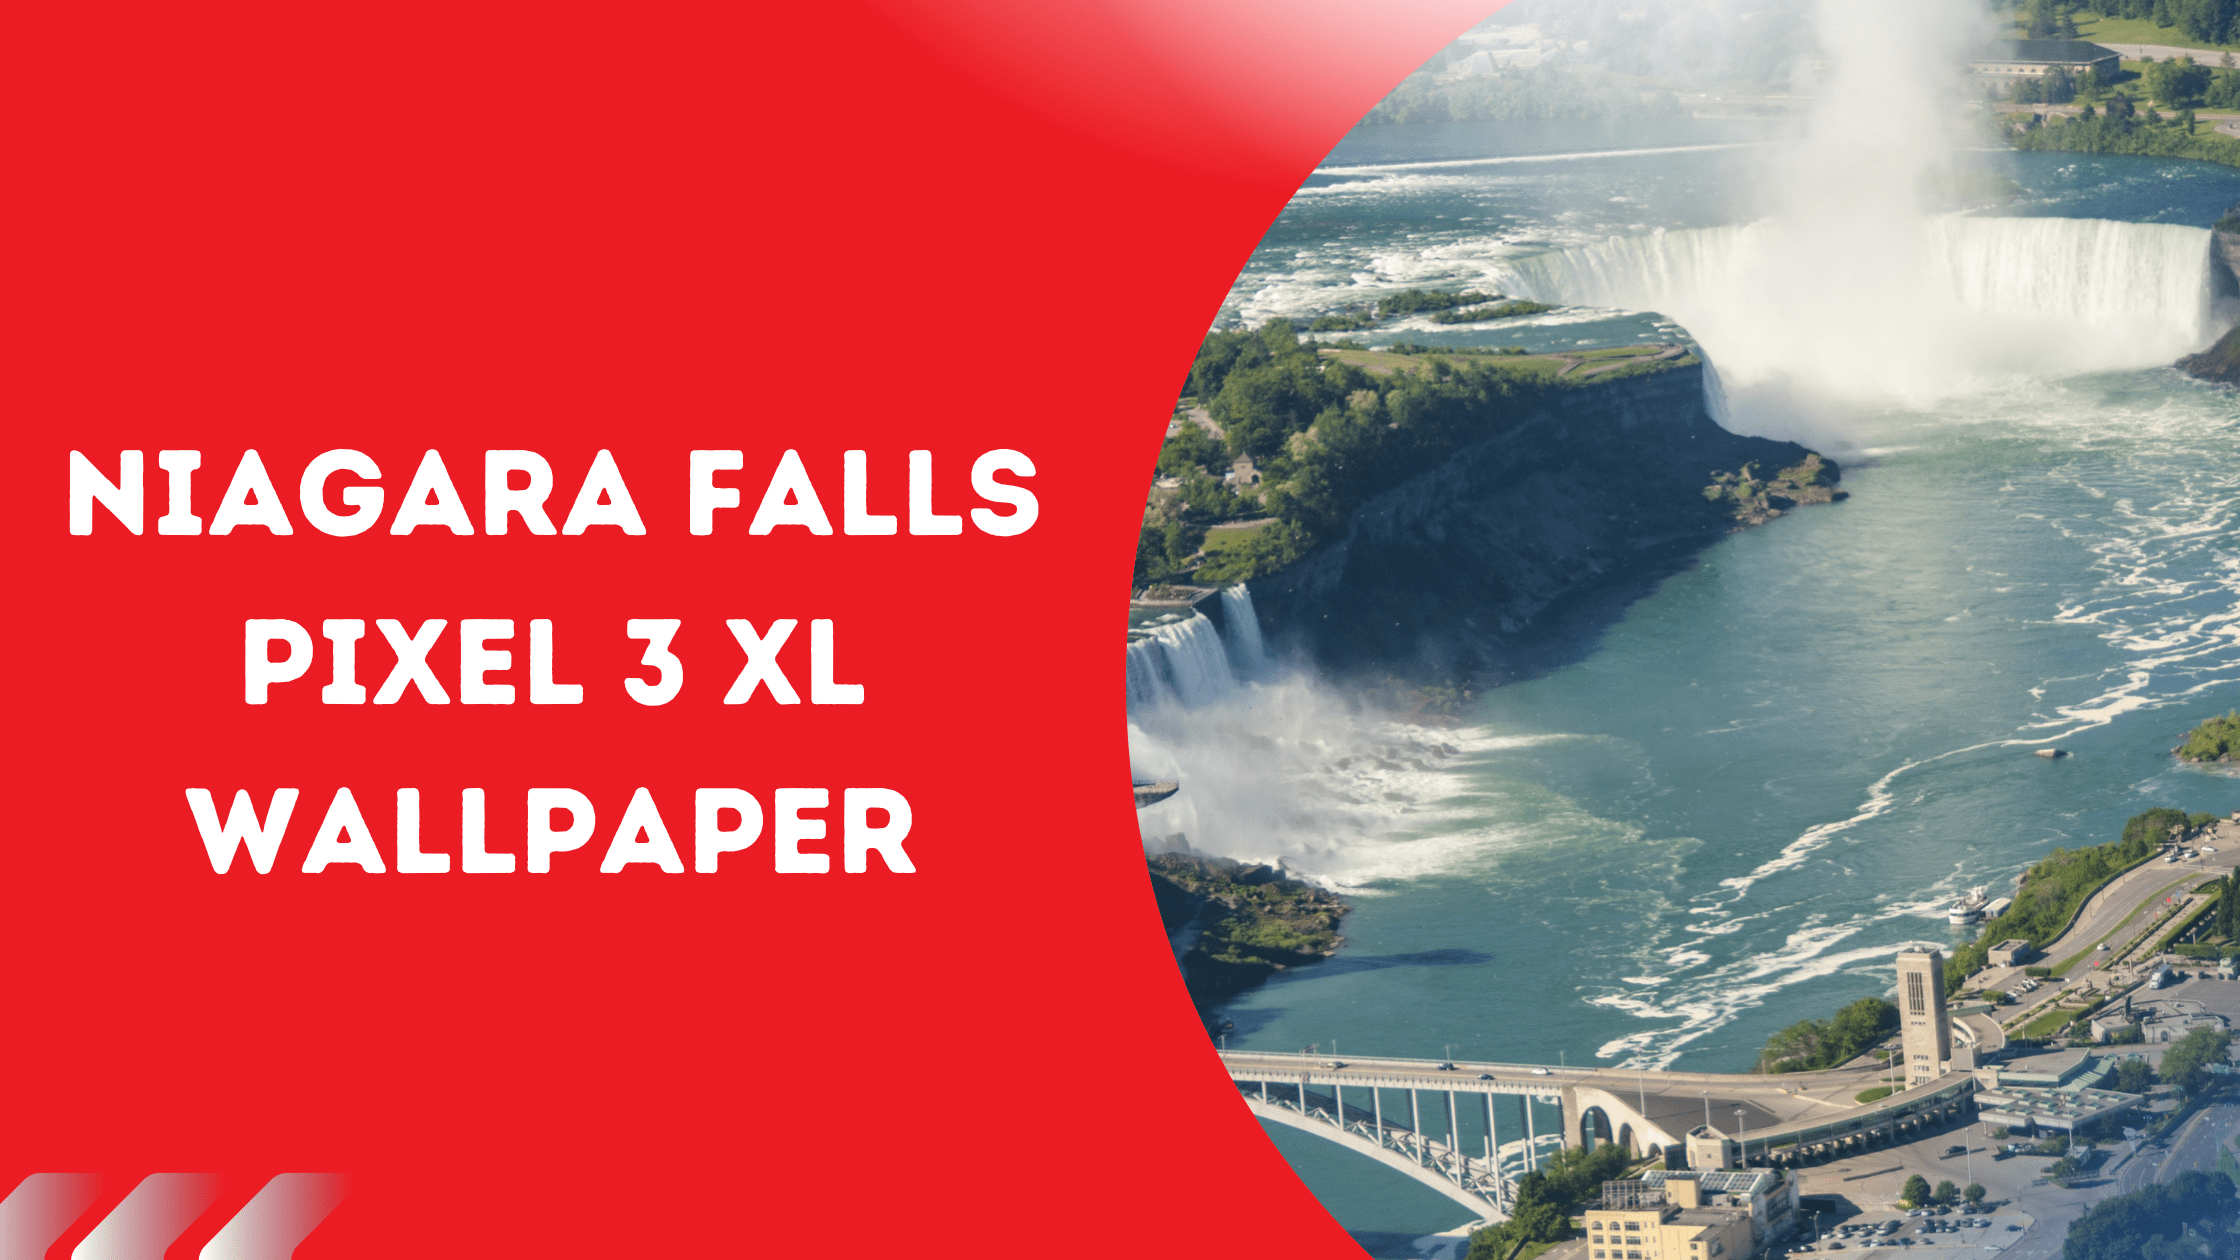 Niagara Falls Pixel 3 XL Wallpaper